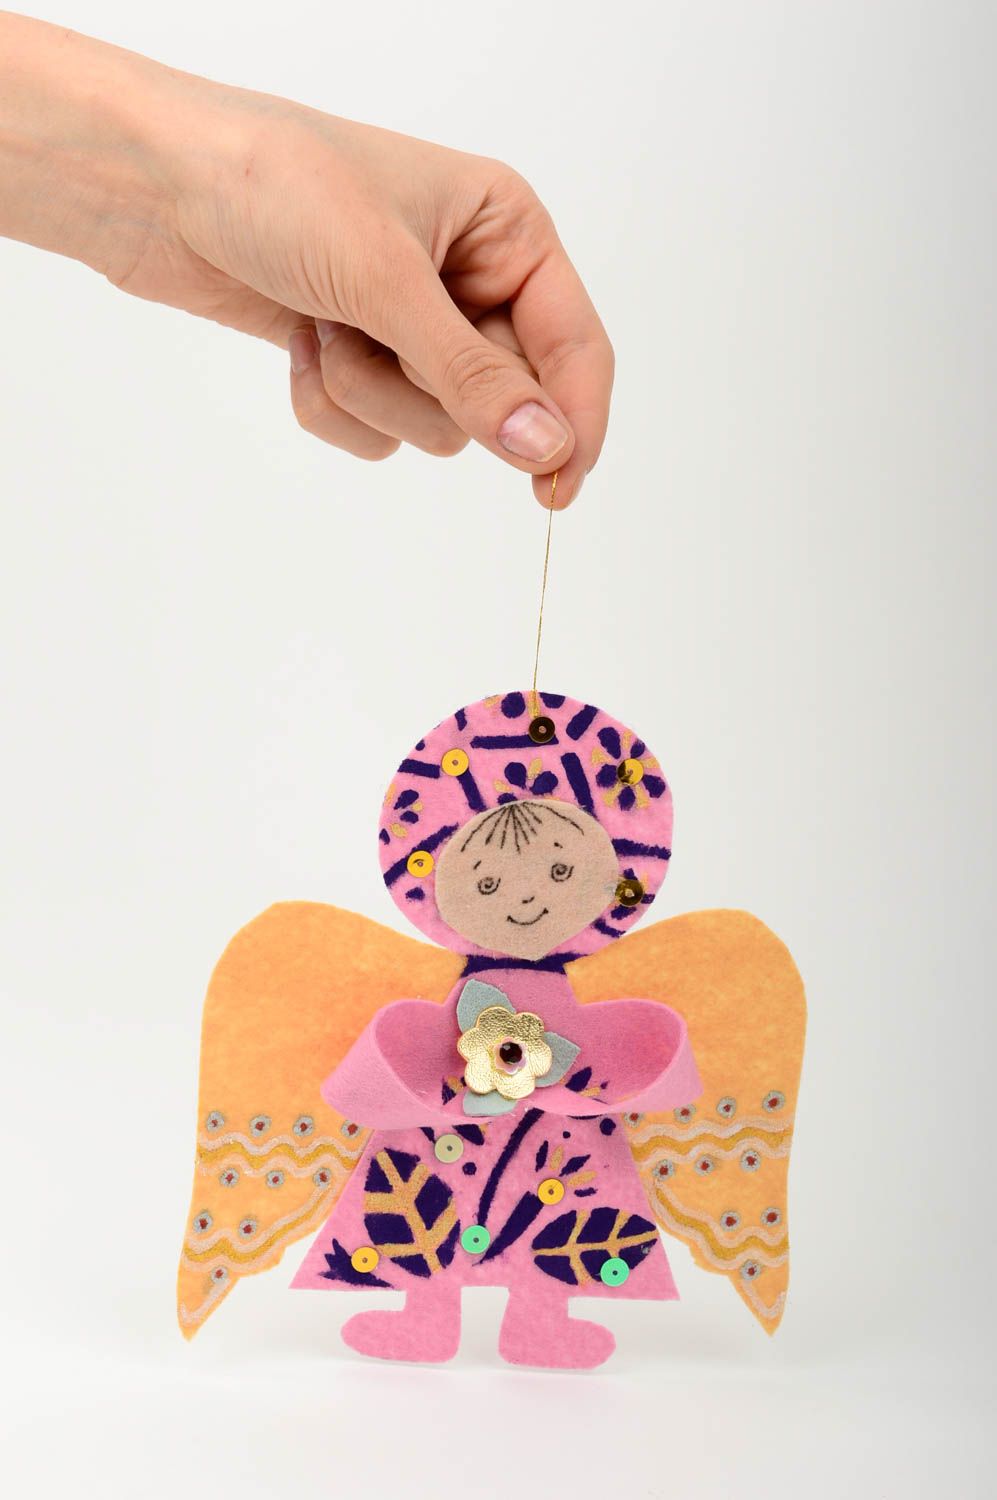 Елочная игрушка ручная работа елочная игрушка из фетра розовая мягкая игрушка фото 2